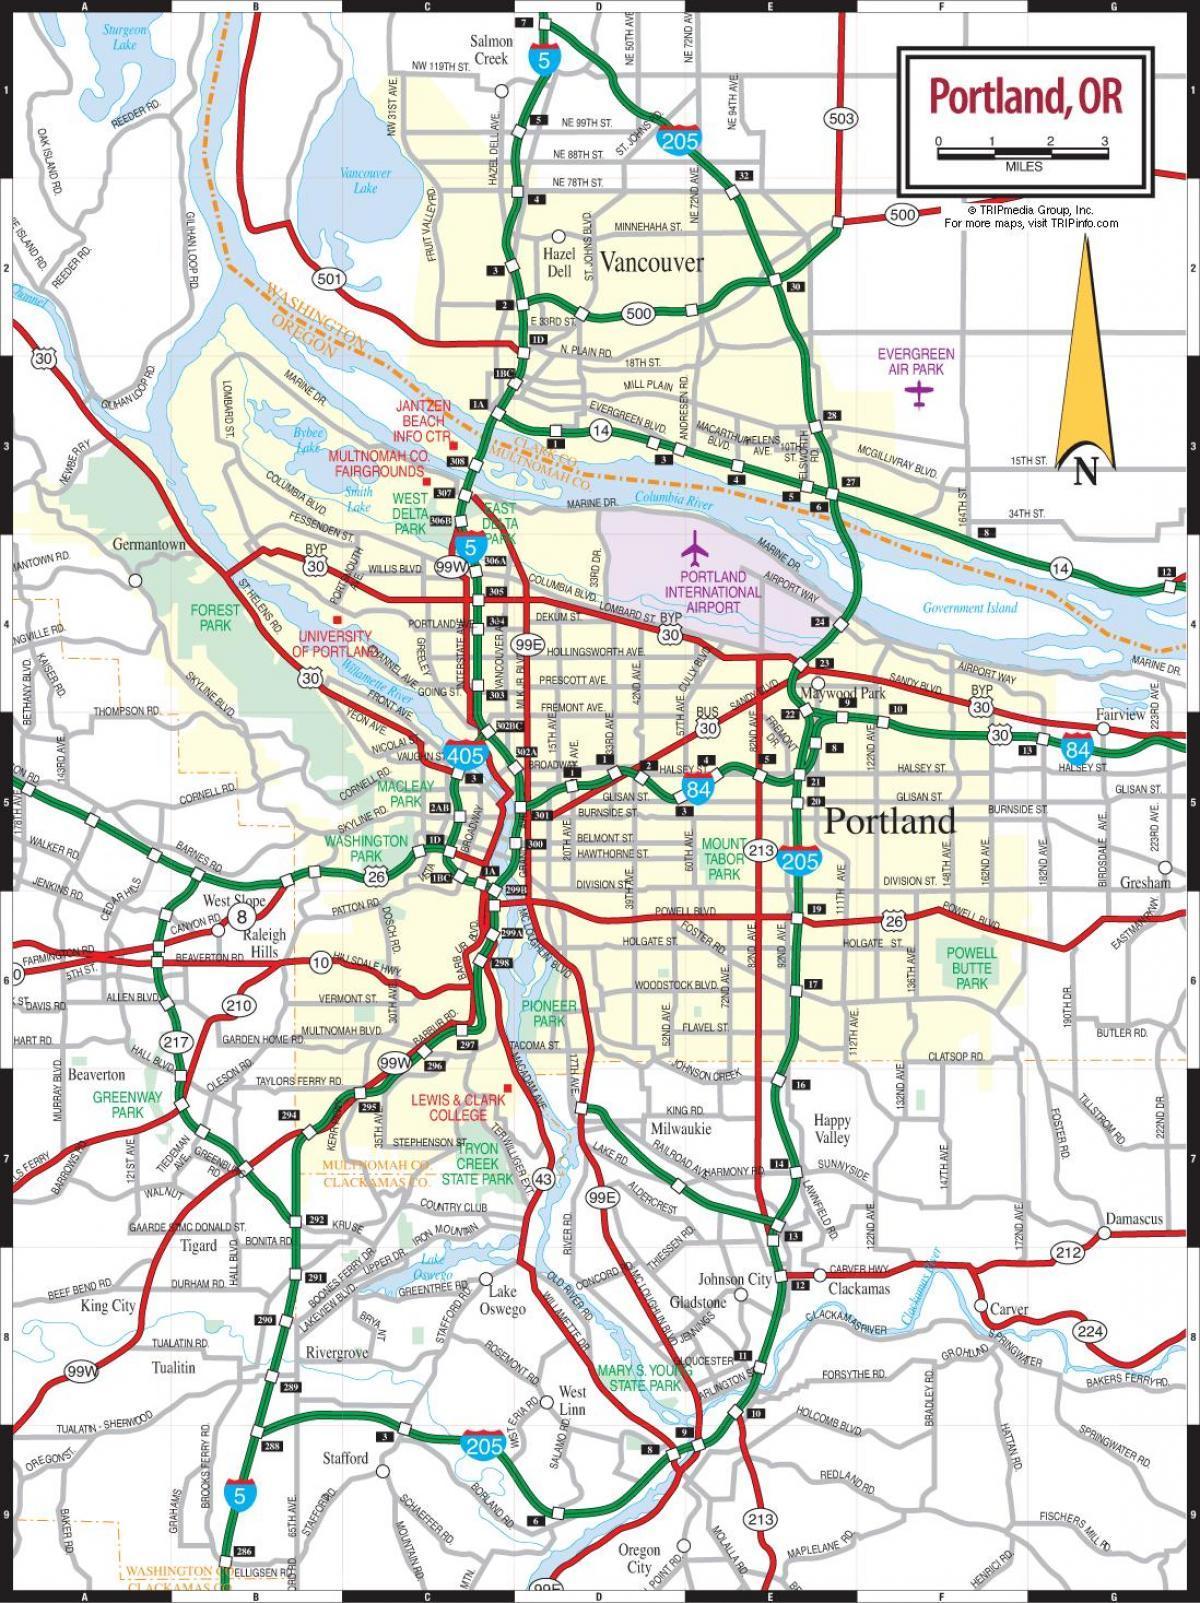 نقشه مترو منطقه پورتلند